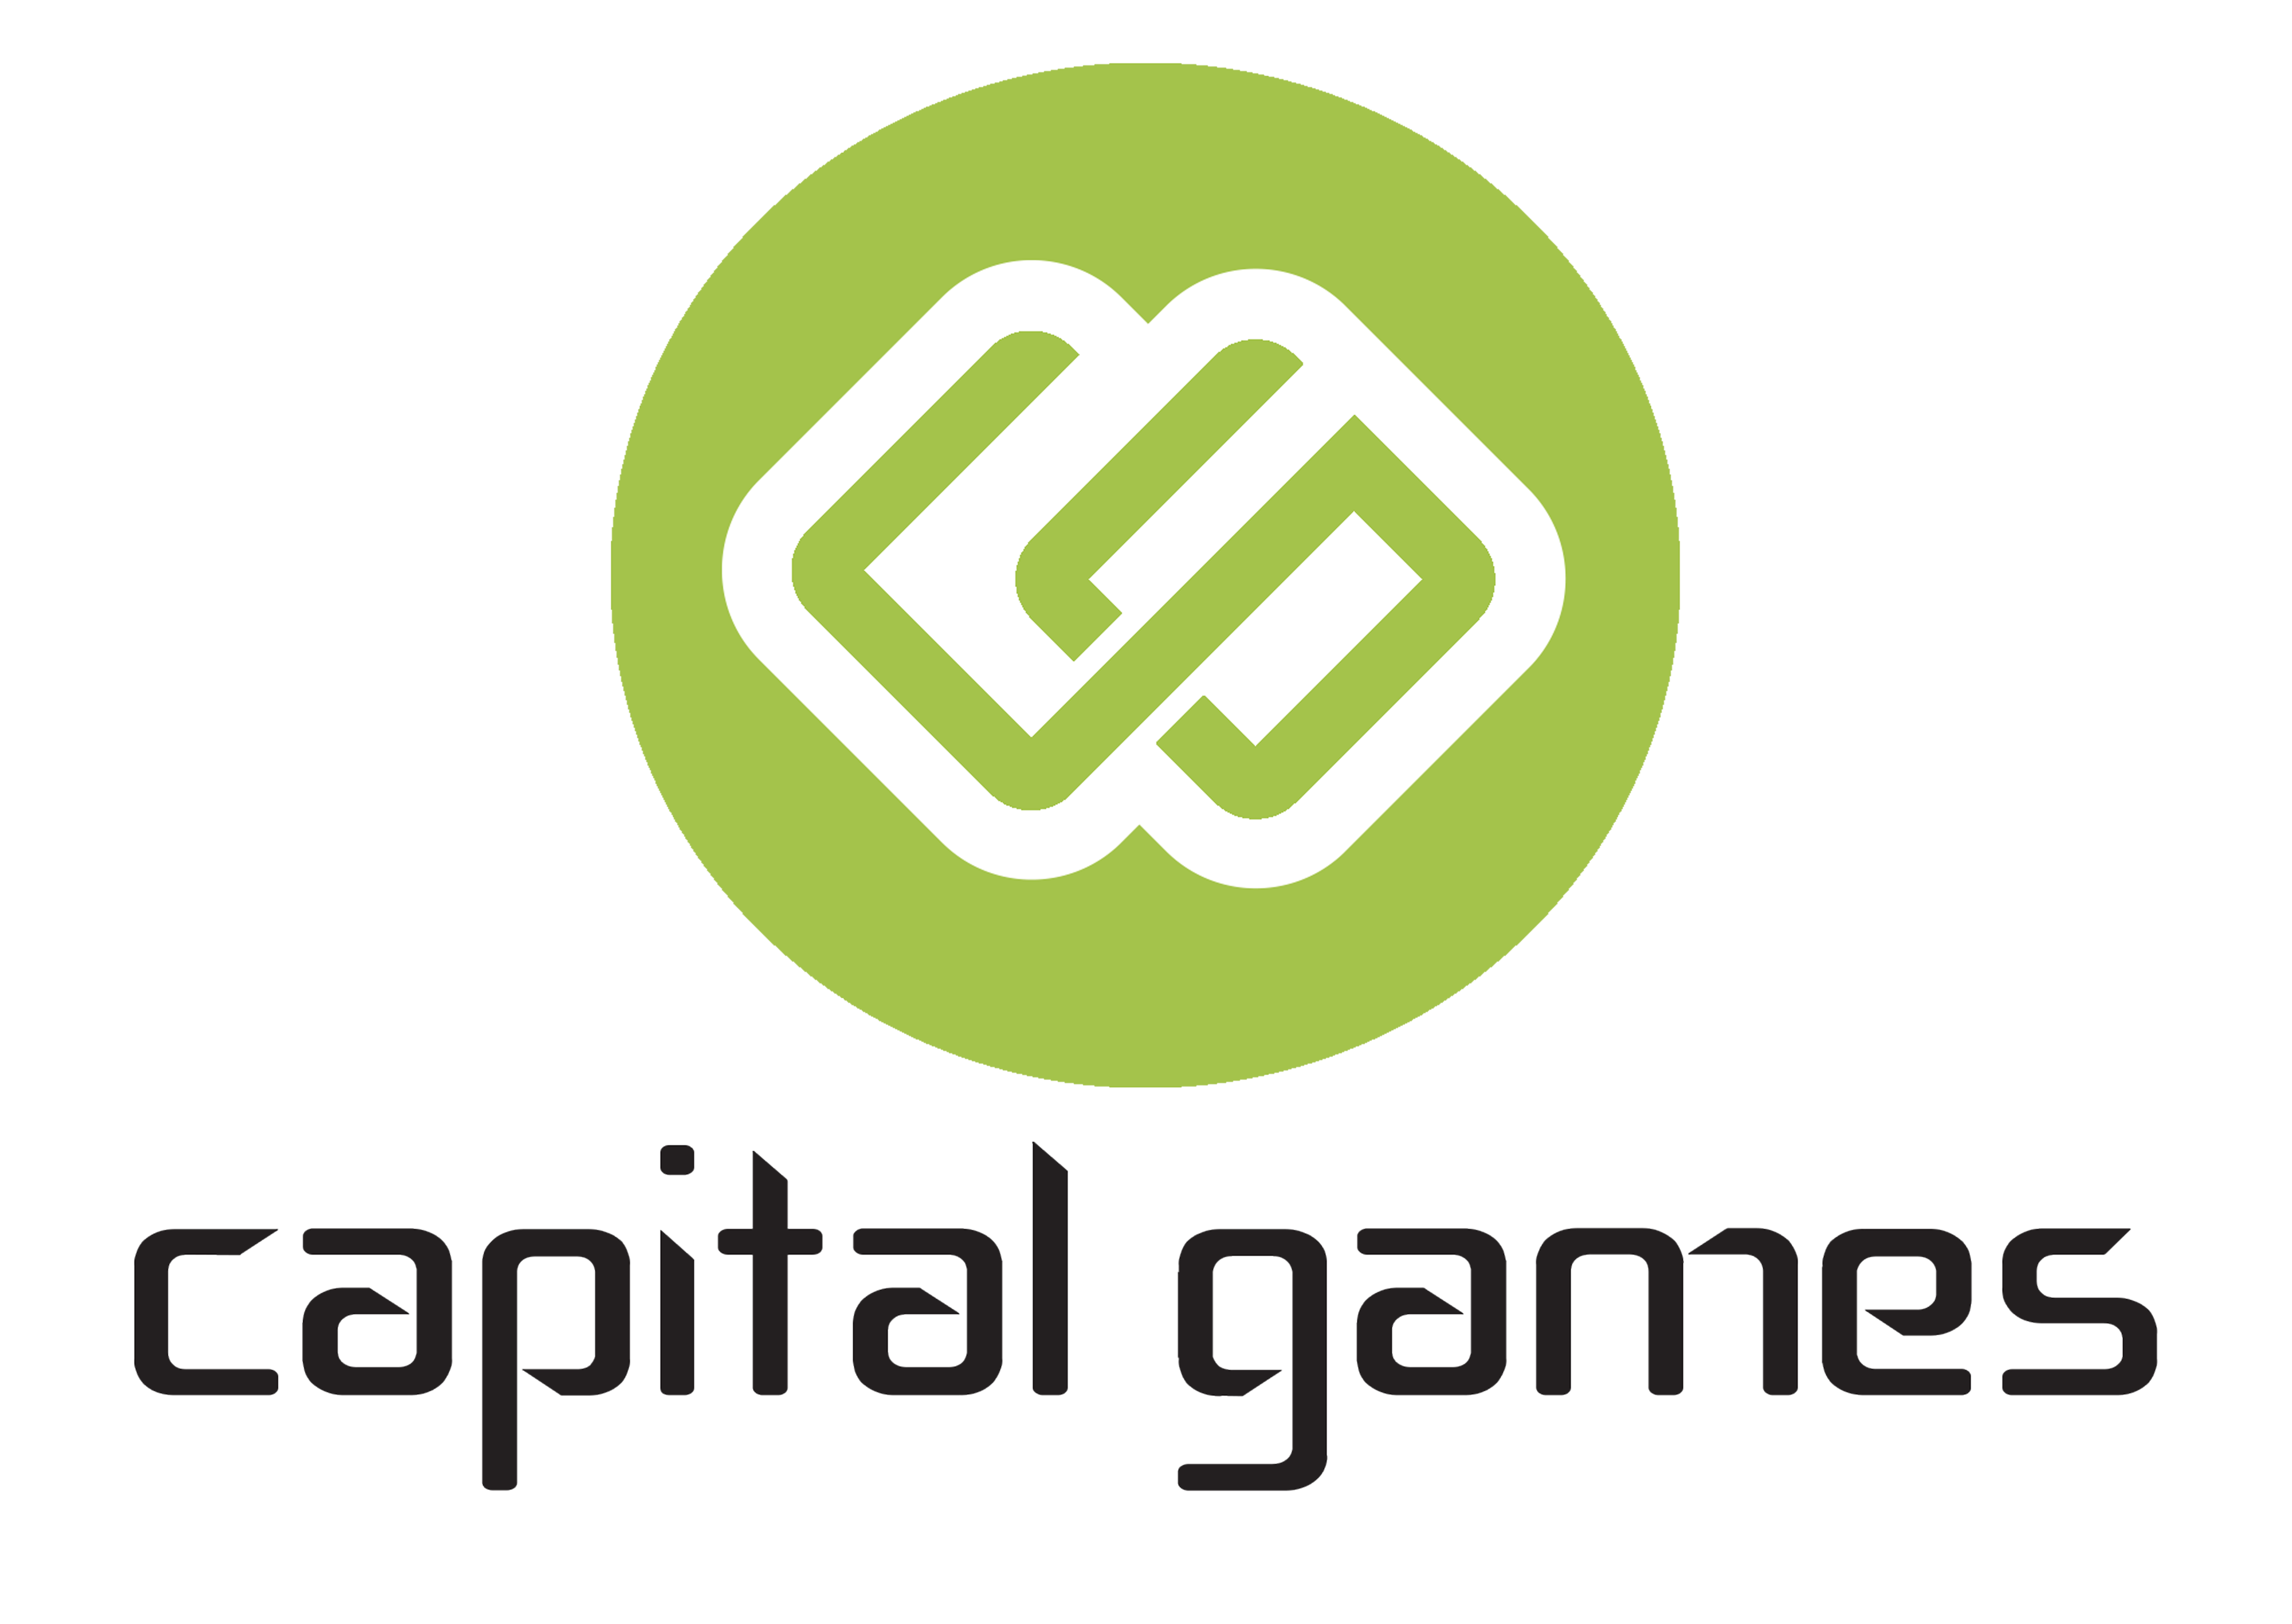 Capital games